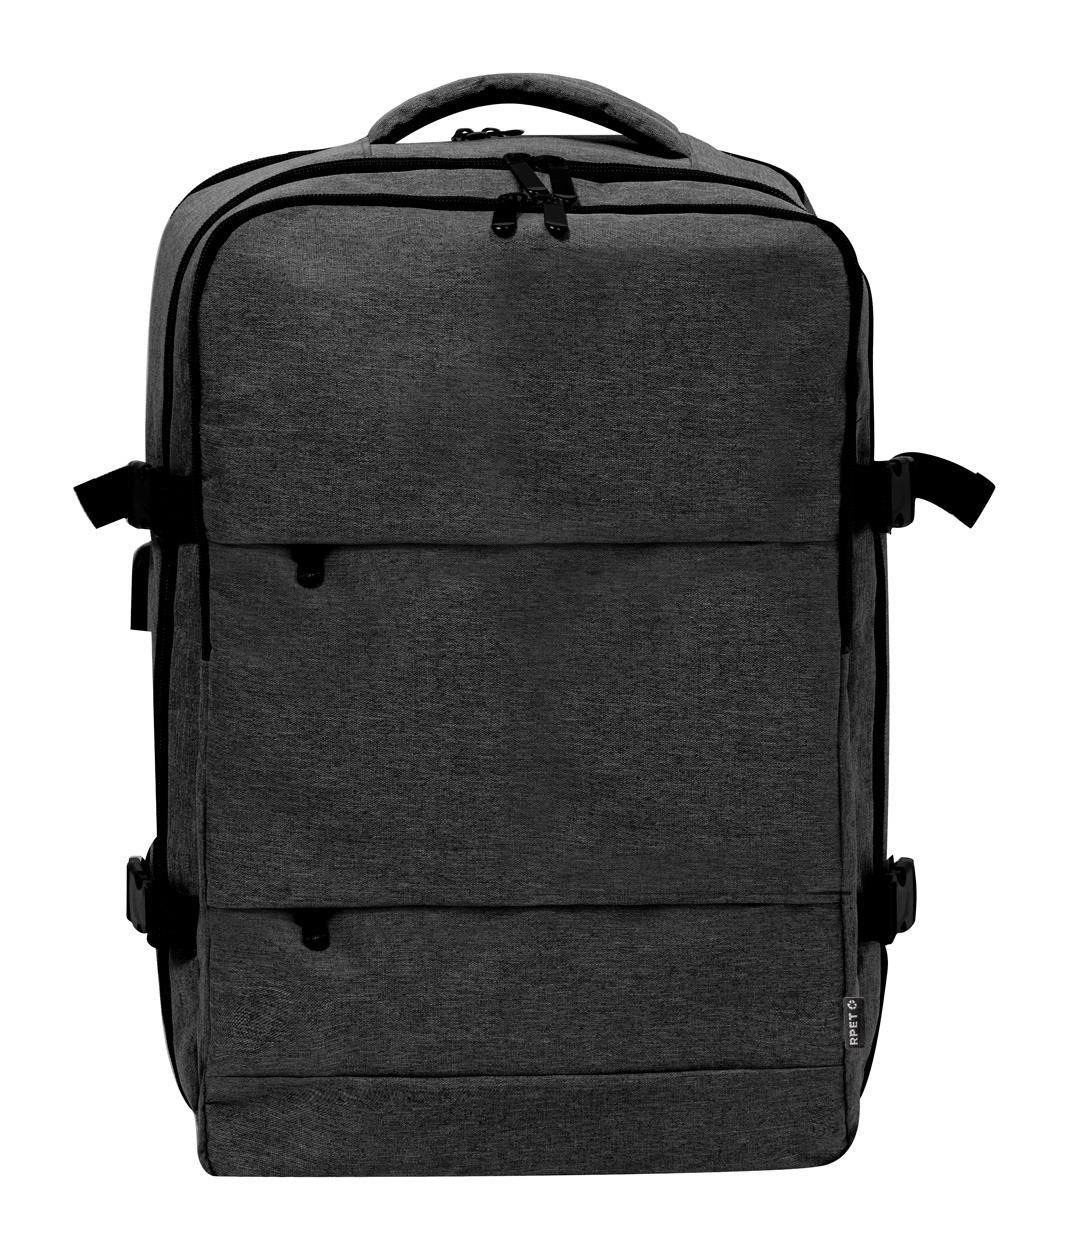 Myriax backpack - black